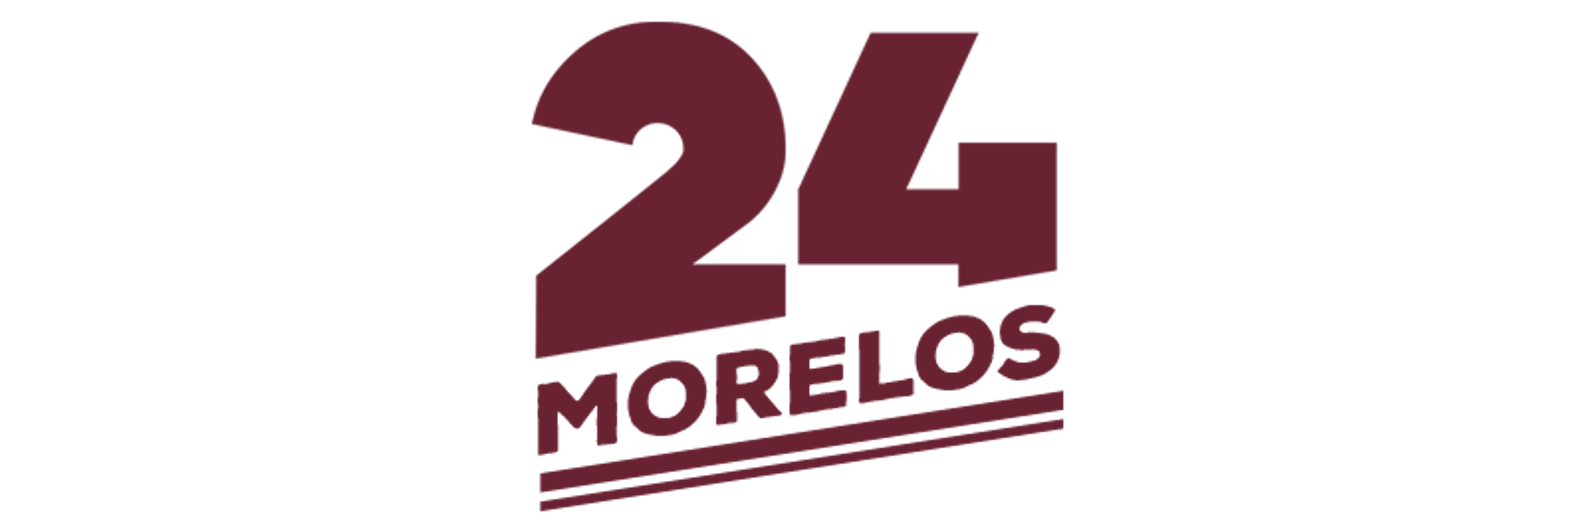 24 Morelos